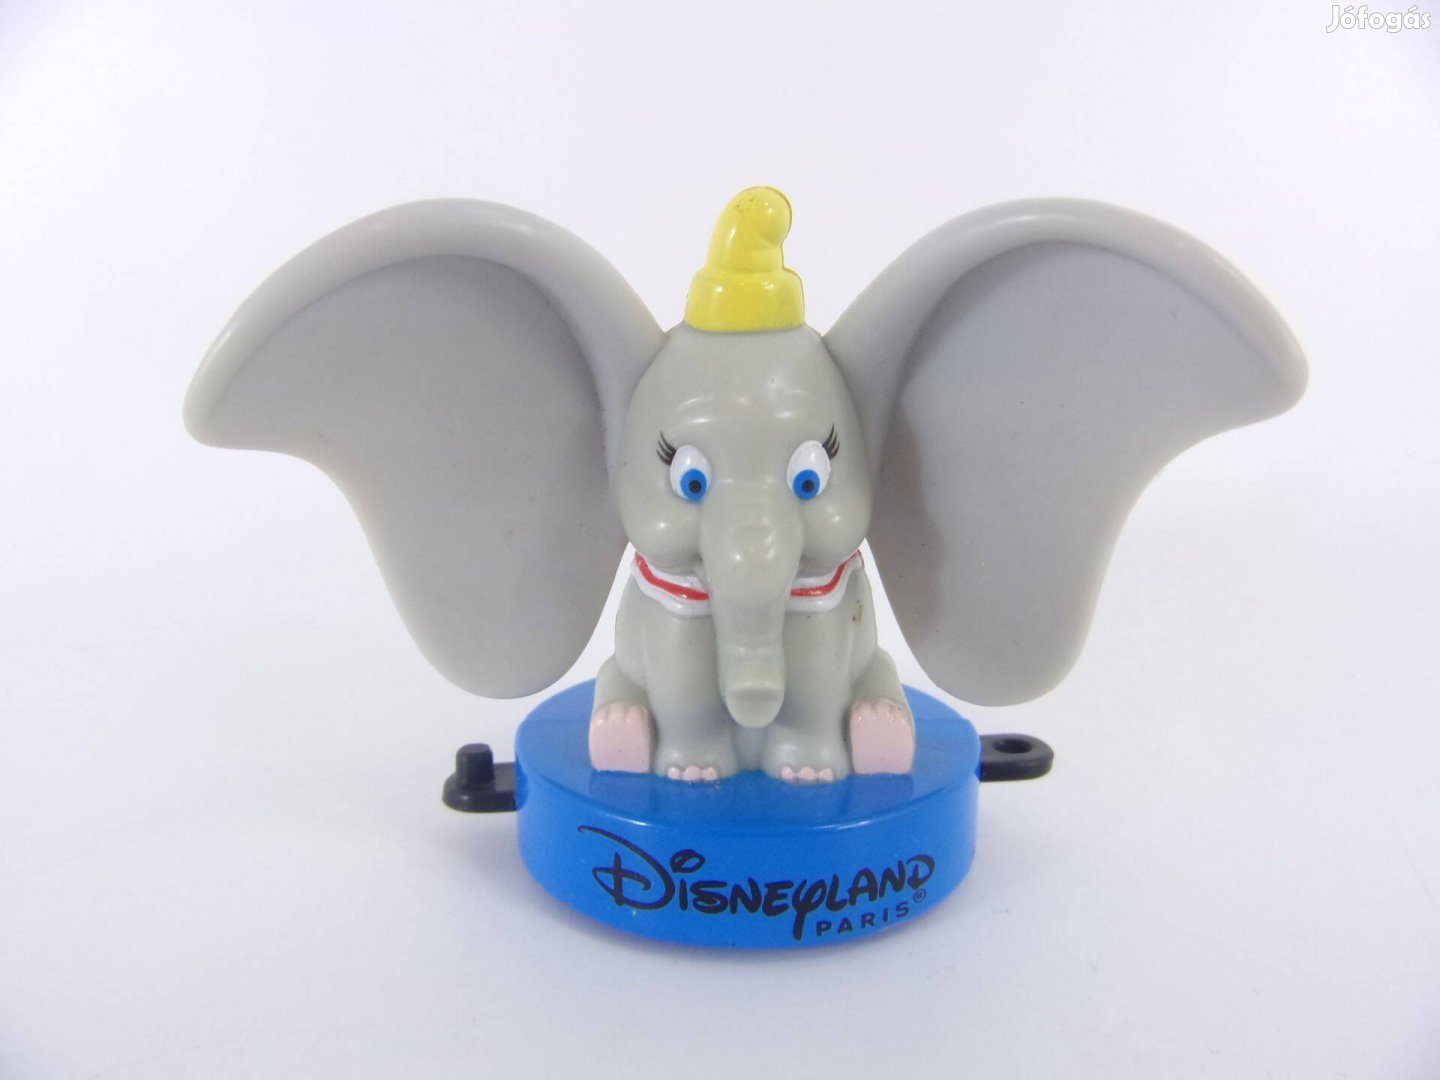 Disney Dumbo figura